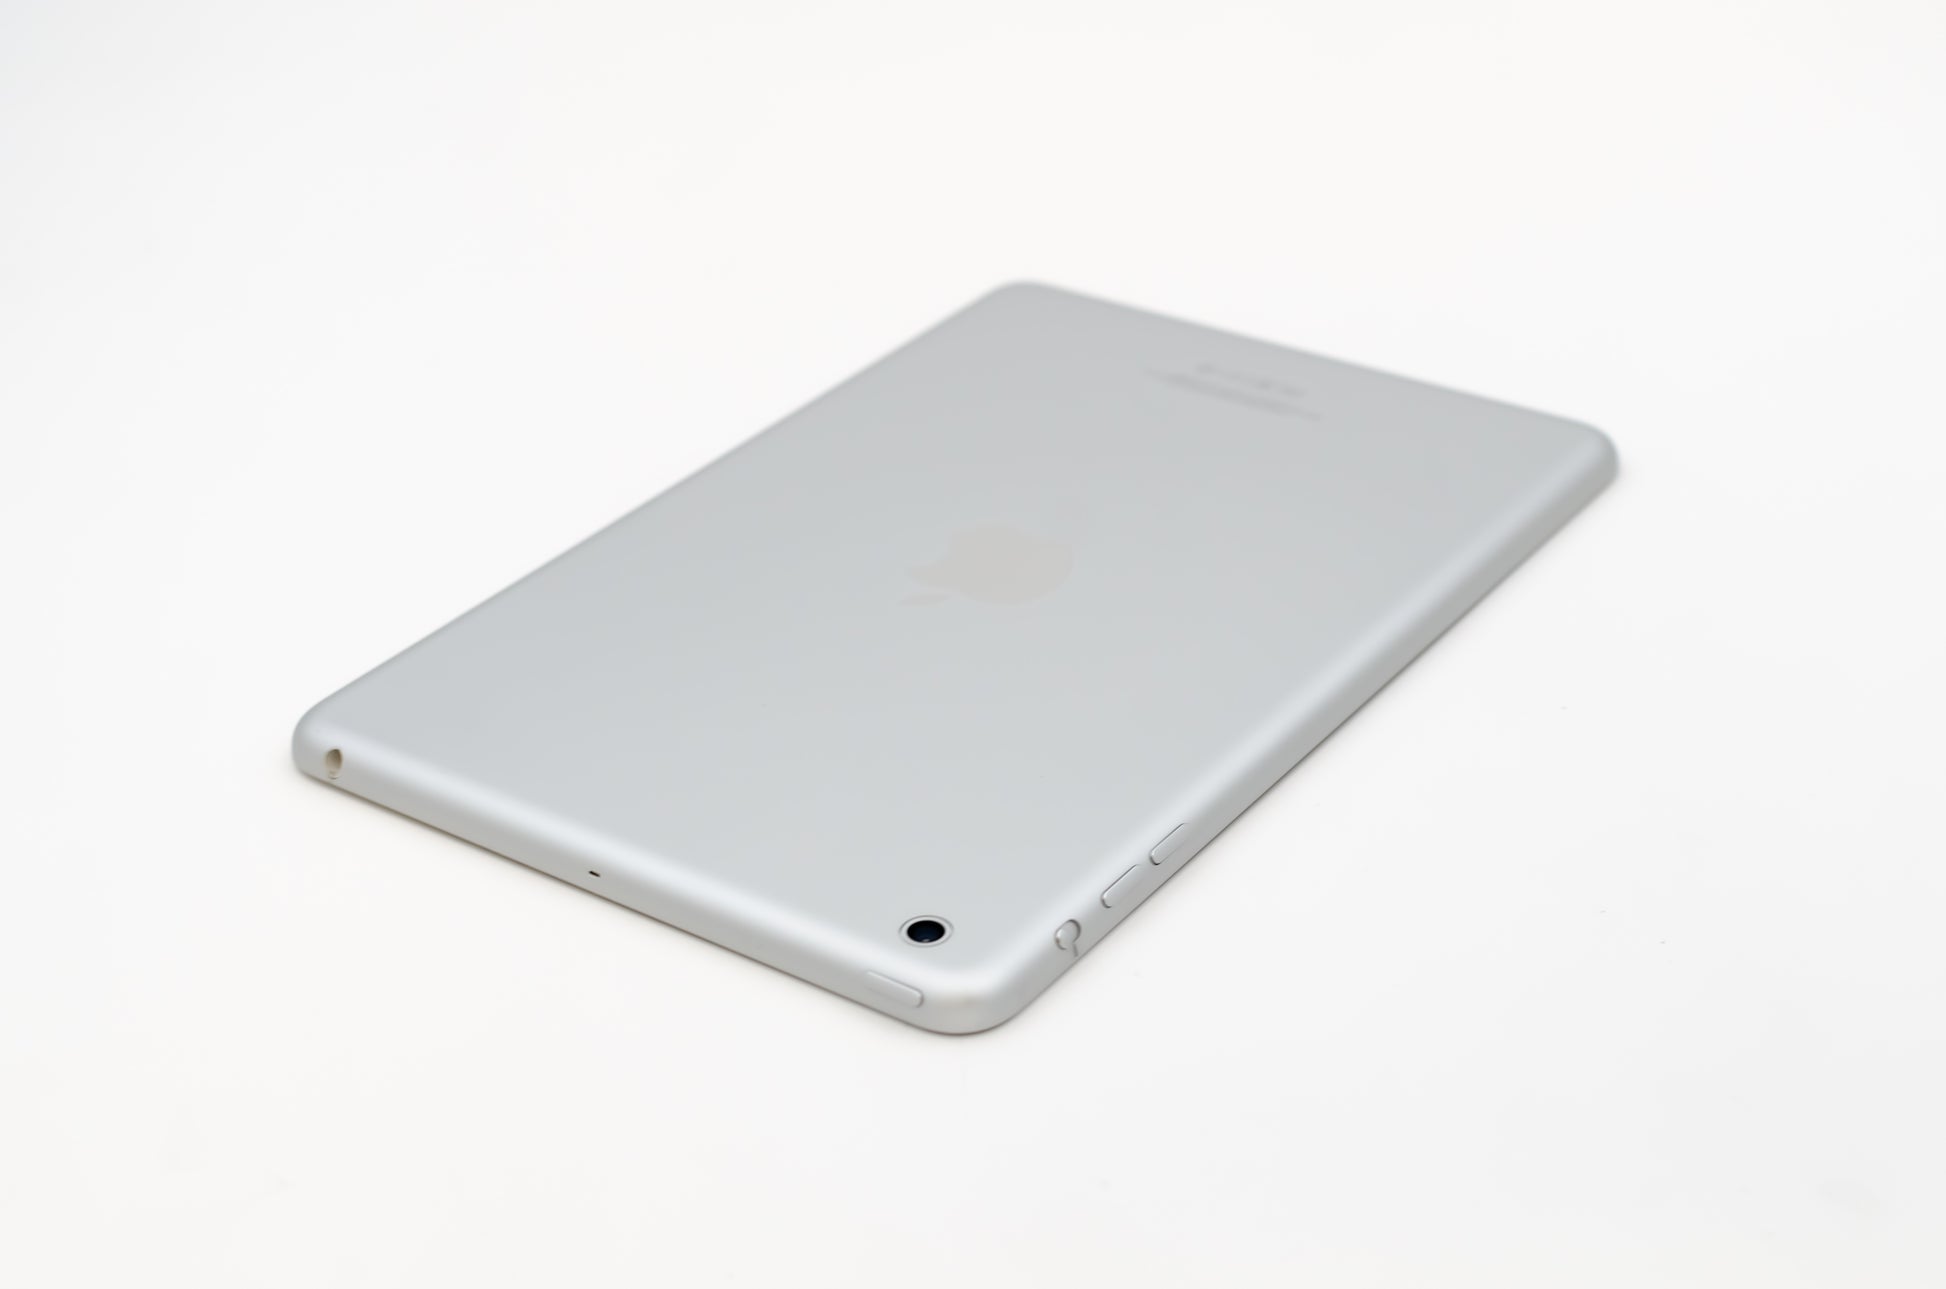 apple-2012-7.9-inch-ipad-mini-1-a1432-silver/white-5